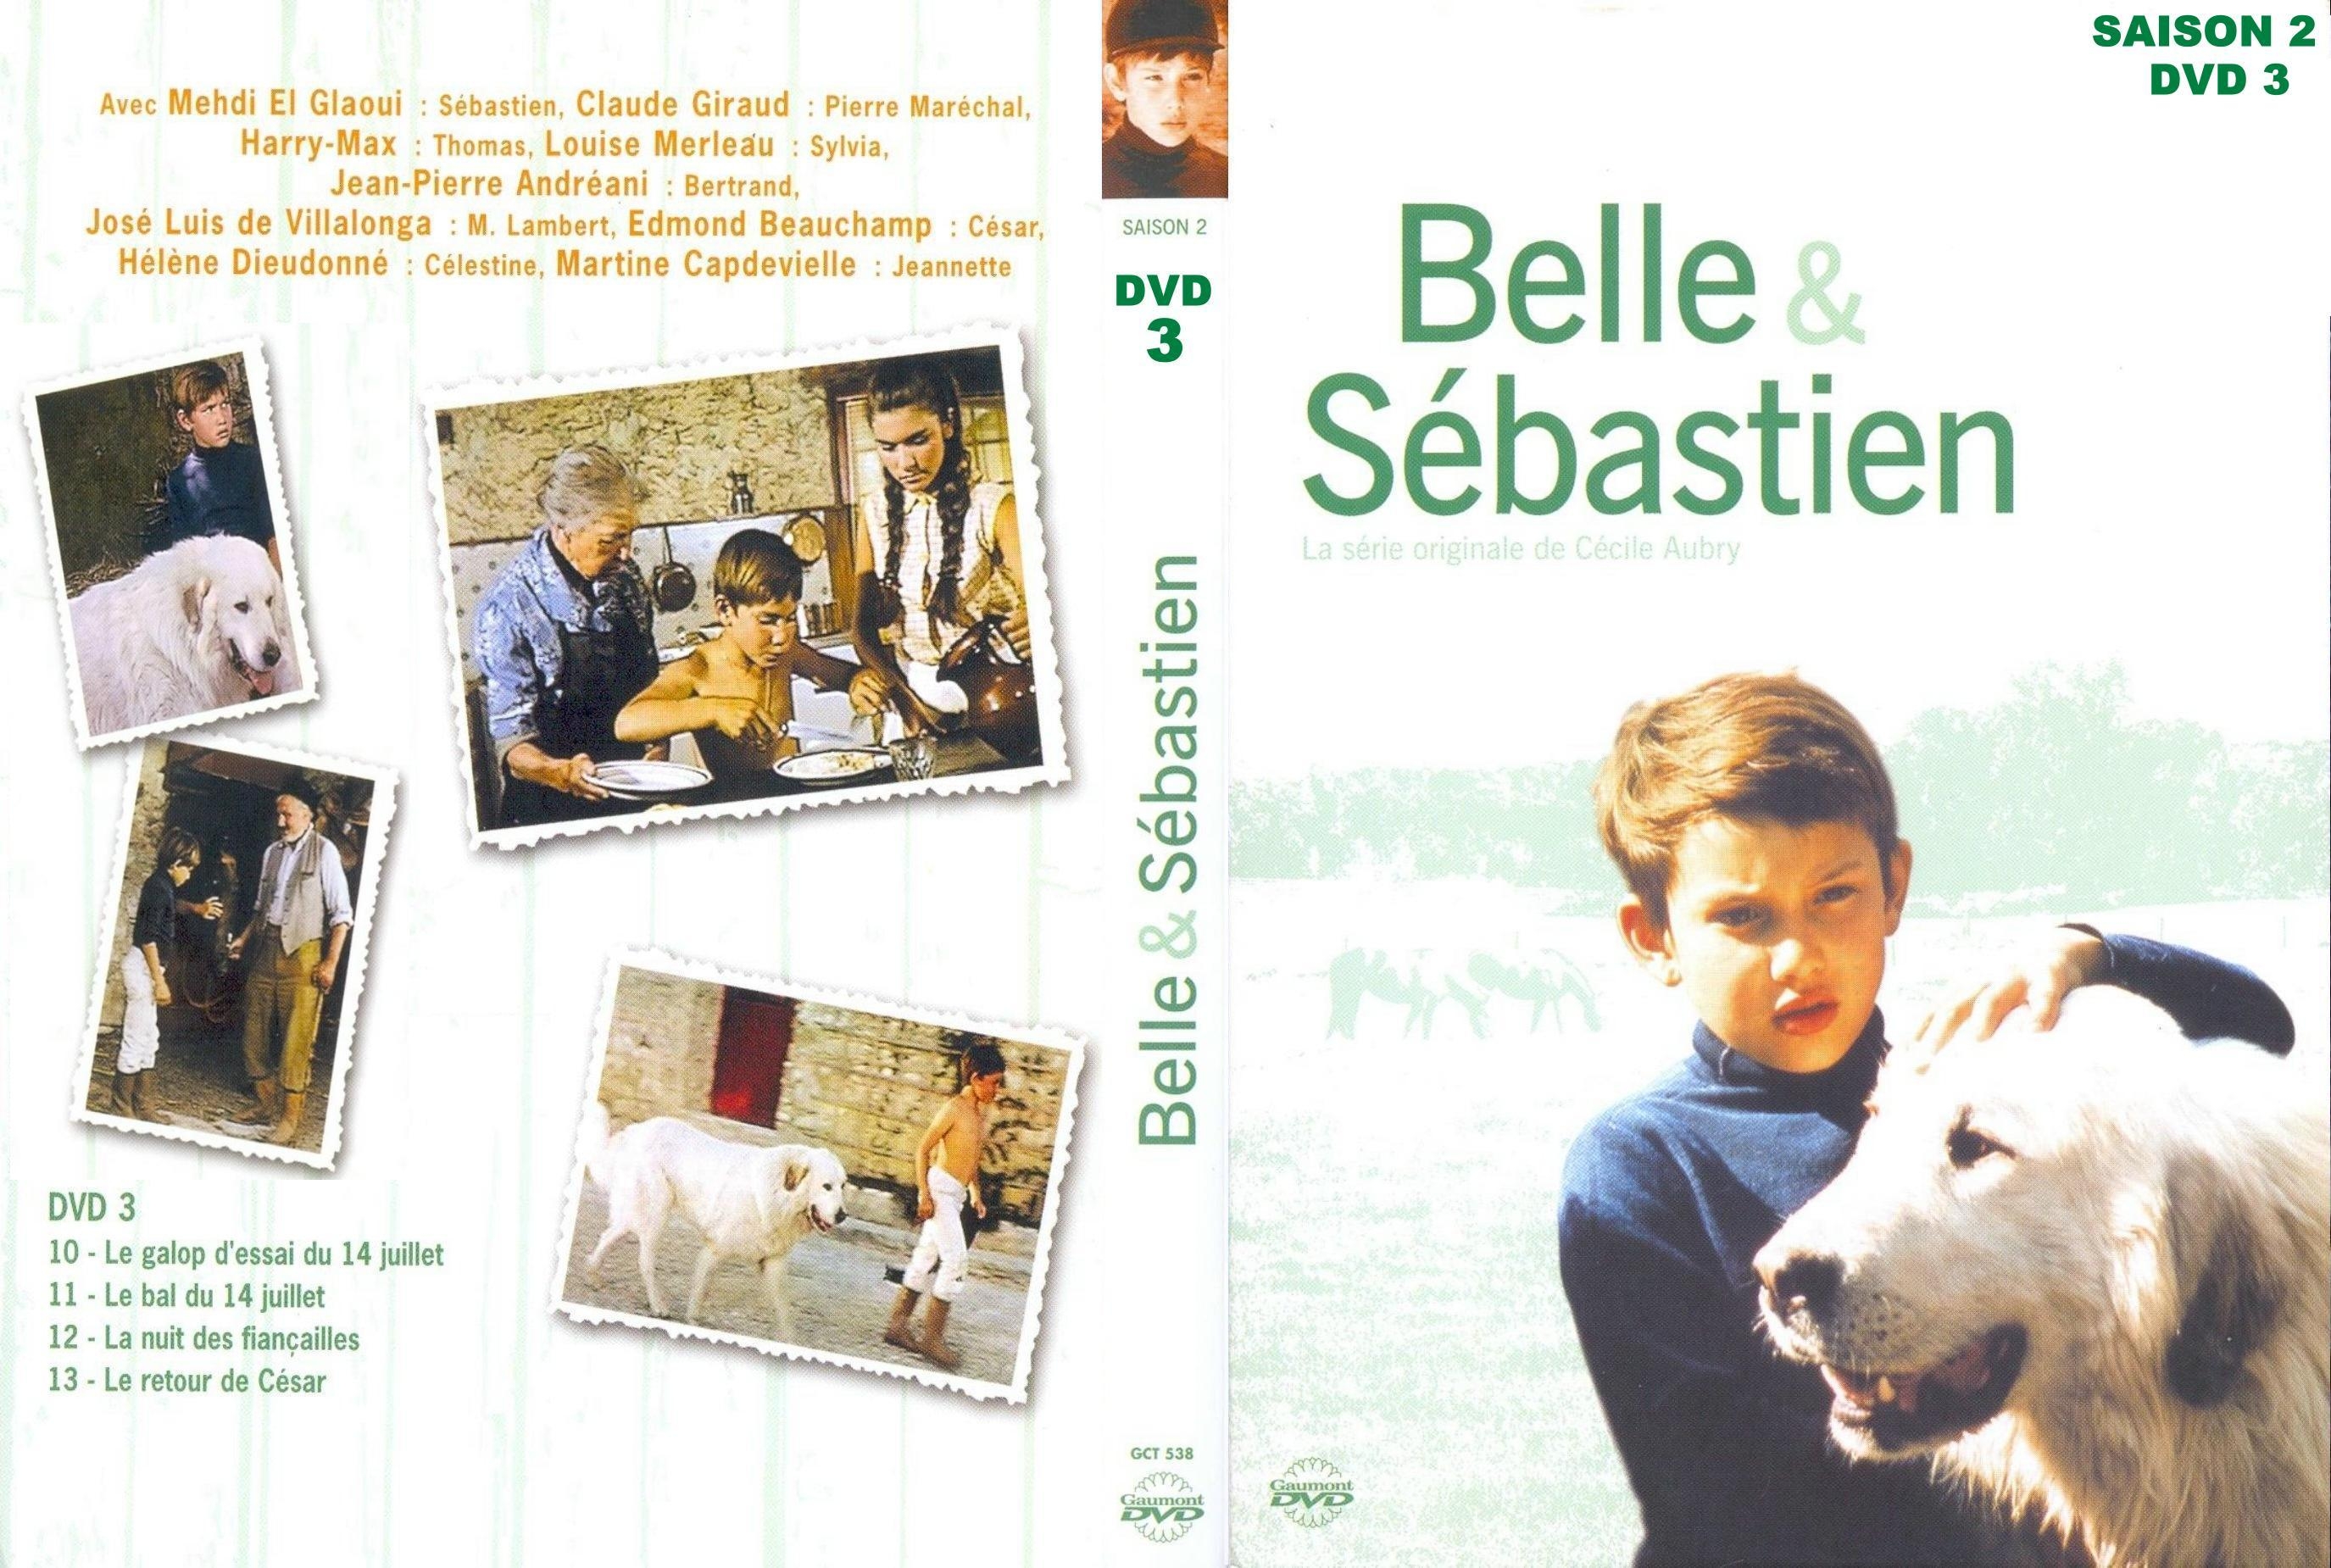 Jaquette DVD Belle et Sebastien Saison 2 dvd 3